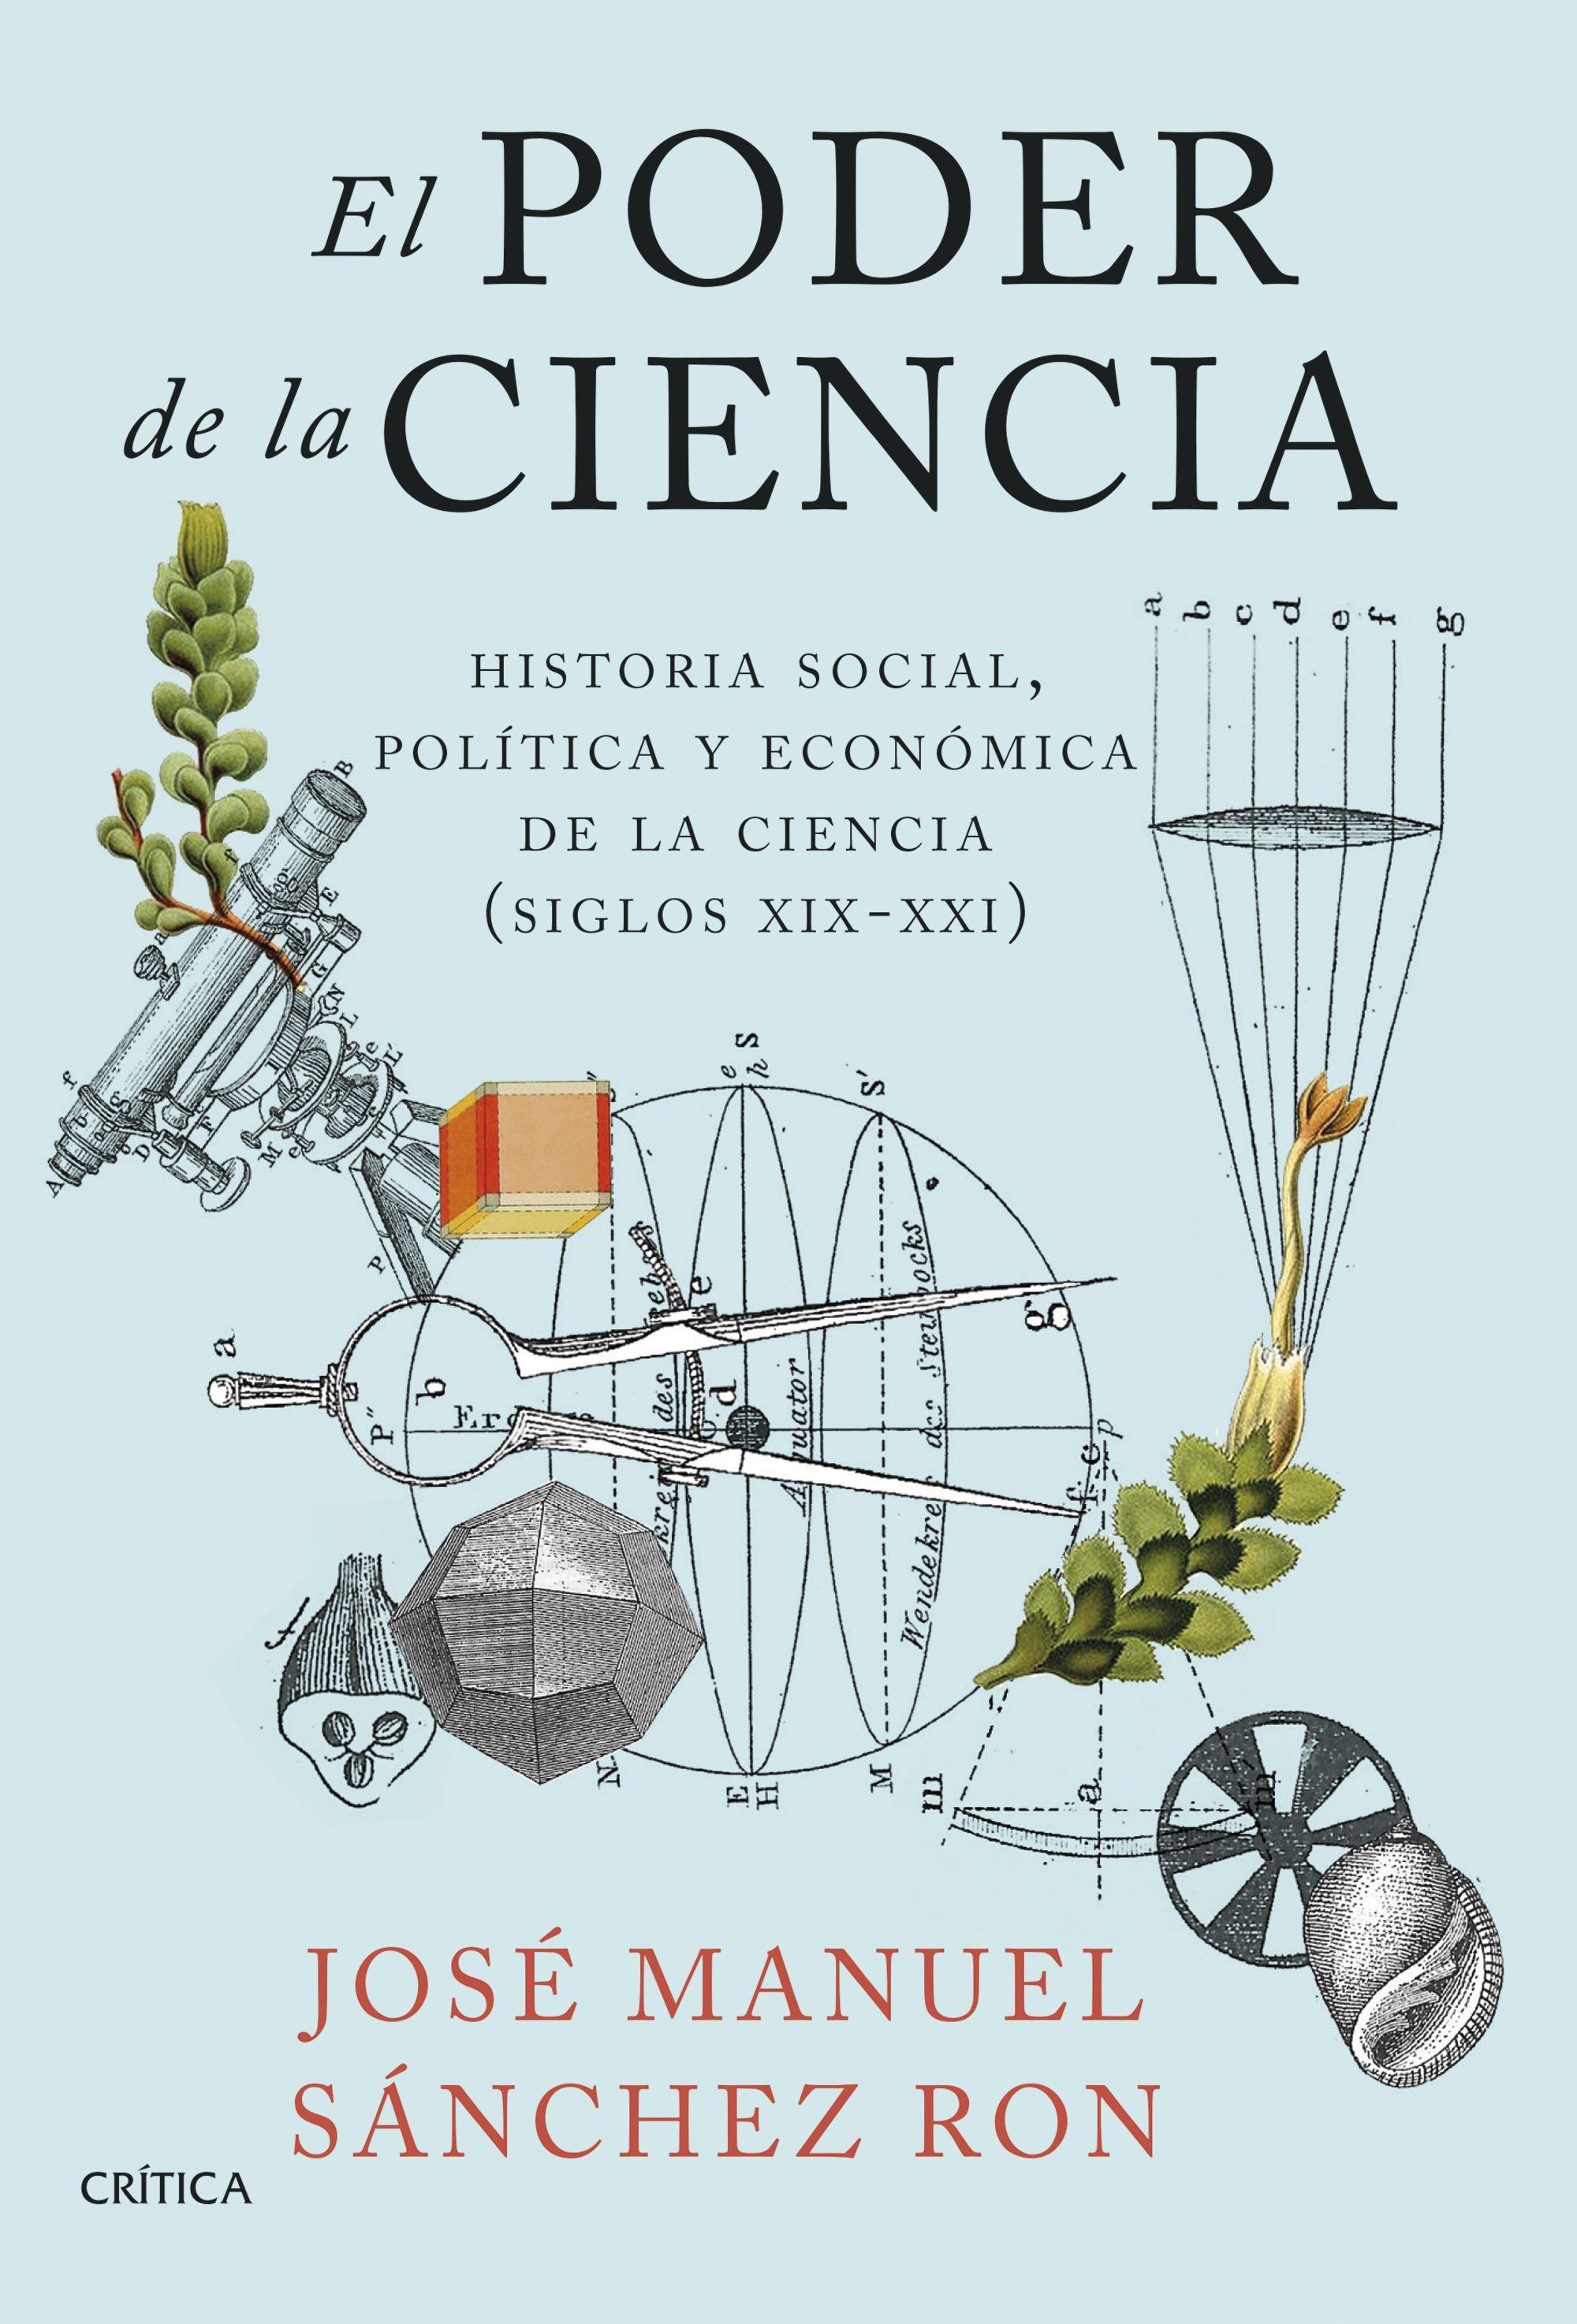 Poder de la ciencia, El "Historia social, política y económica de la ciencia (siglos XIX-XXI)"